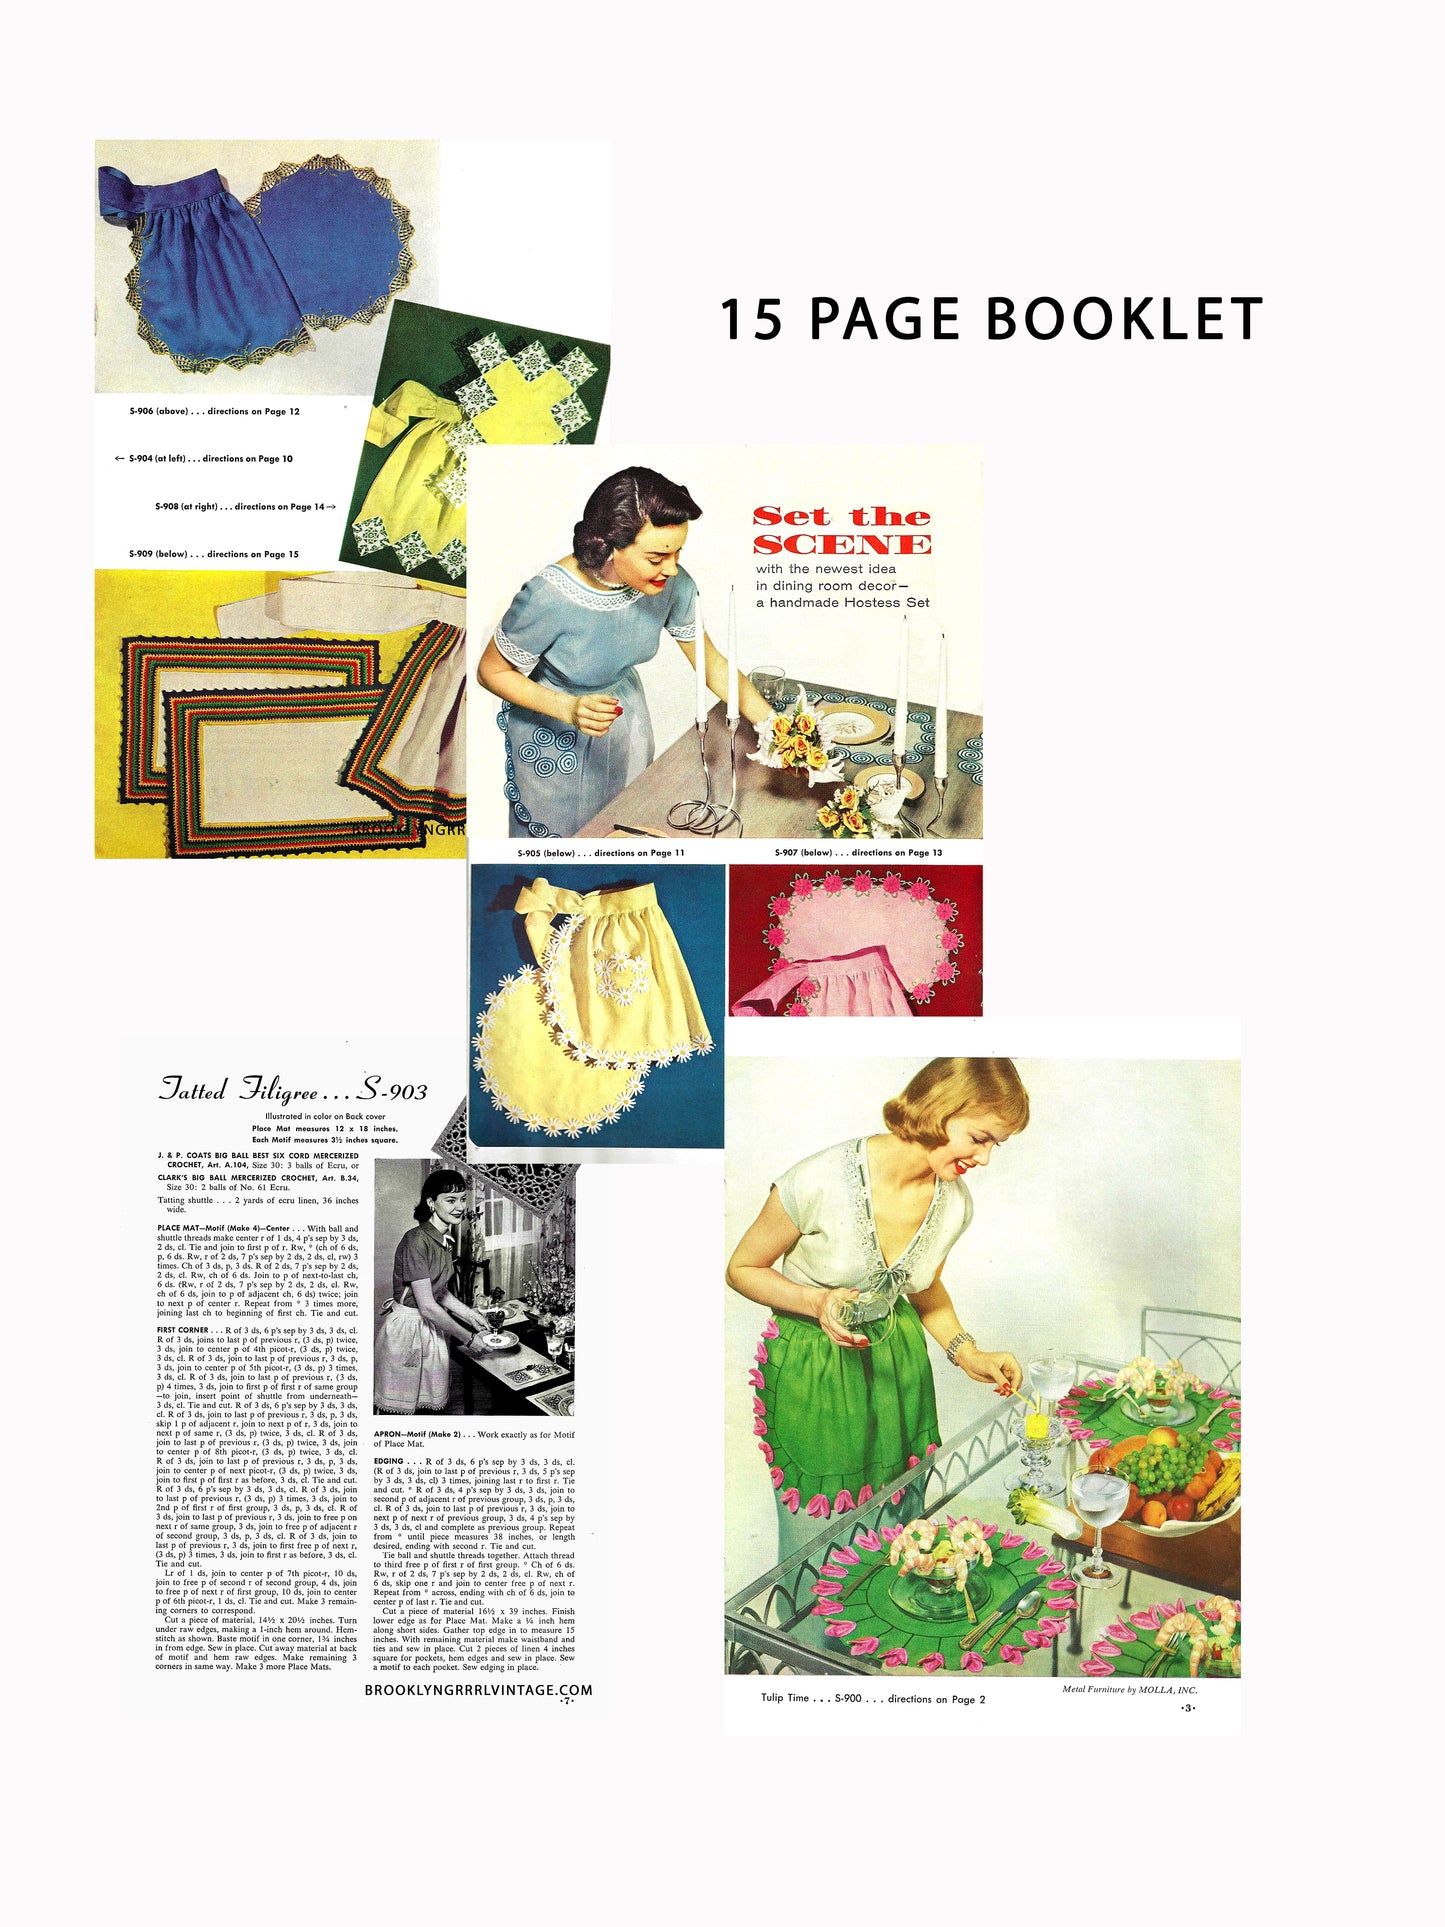 FREE 1950s Coats & Clark's Hostess Book - PDF Download